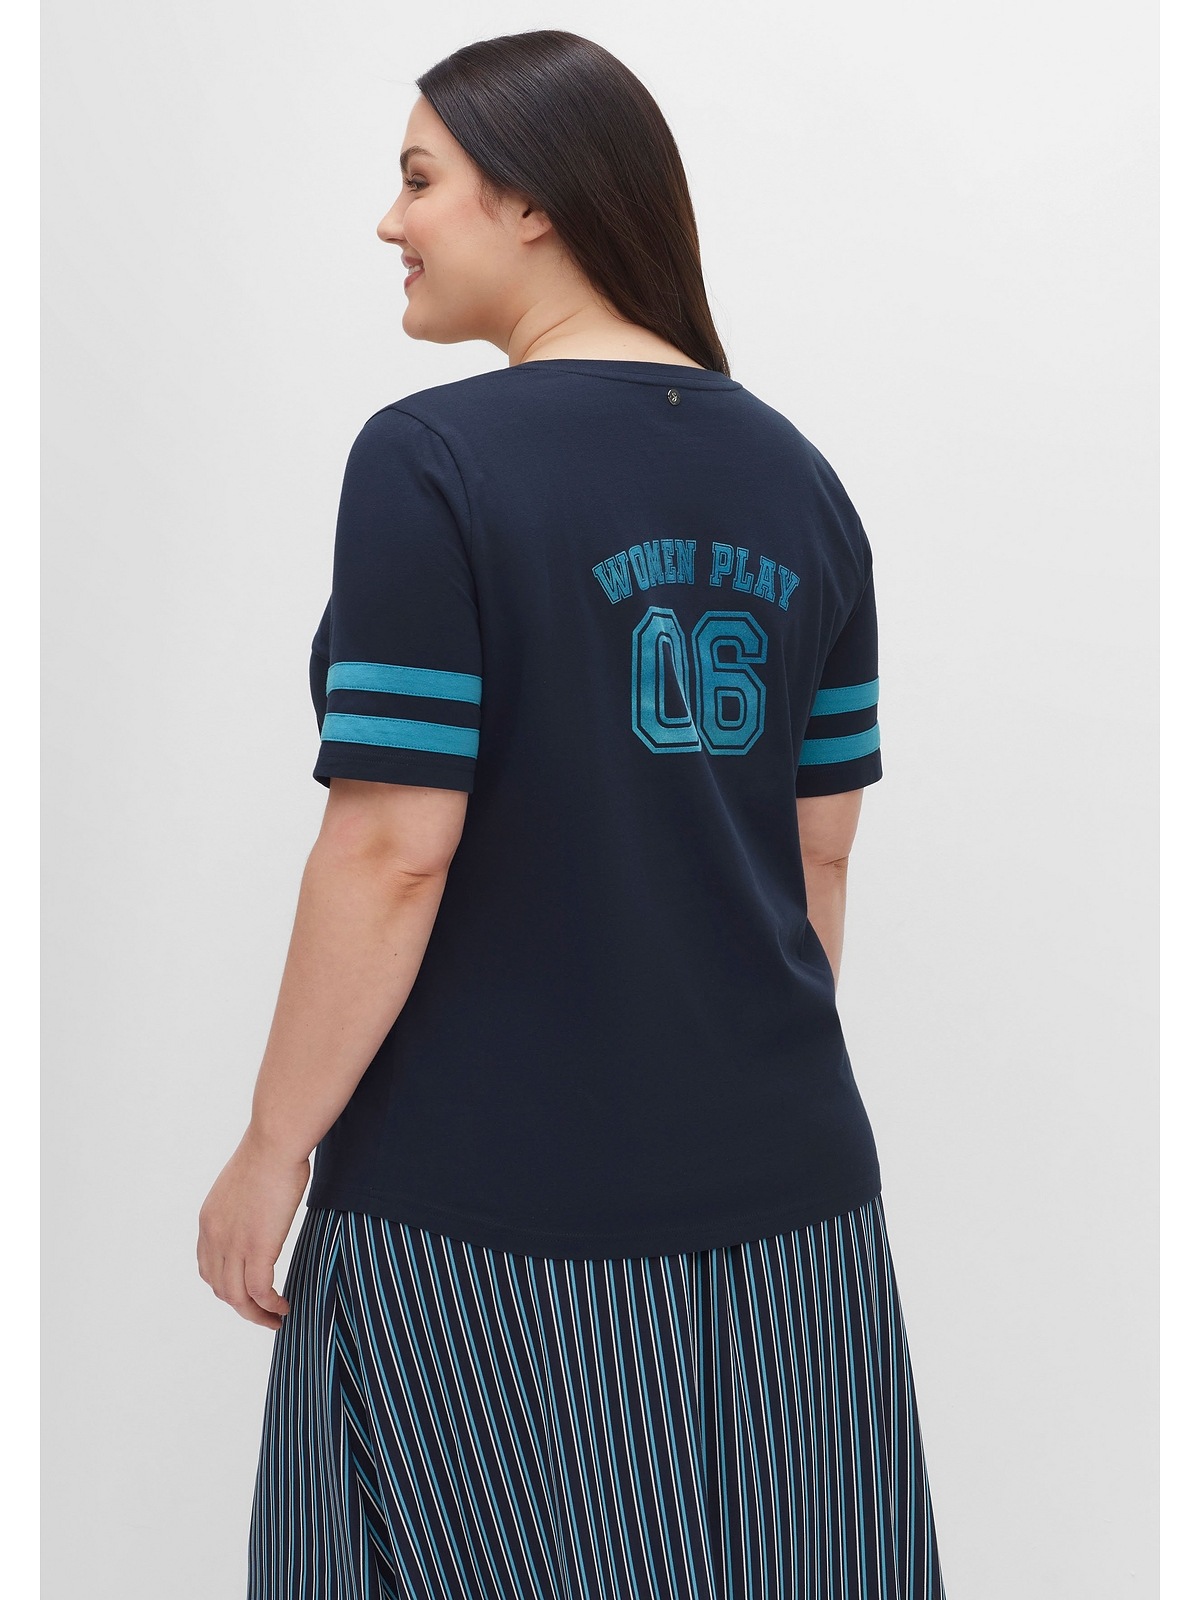 Sheego T-Shirt Große Größen im mit College-Stil Flockprint und Streifen